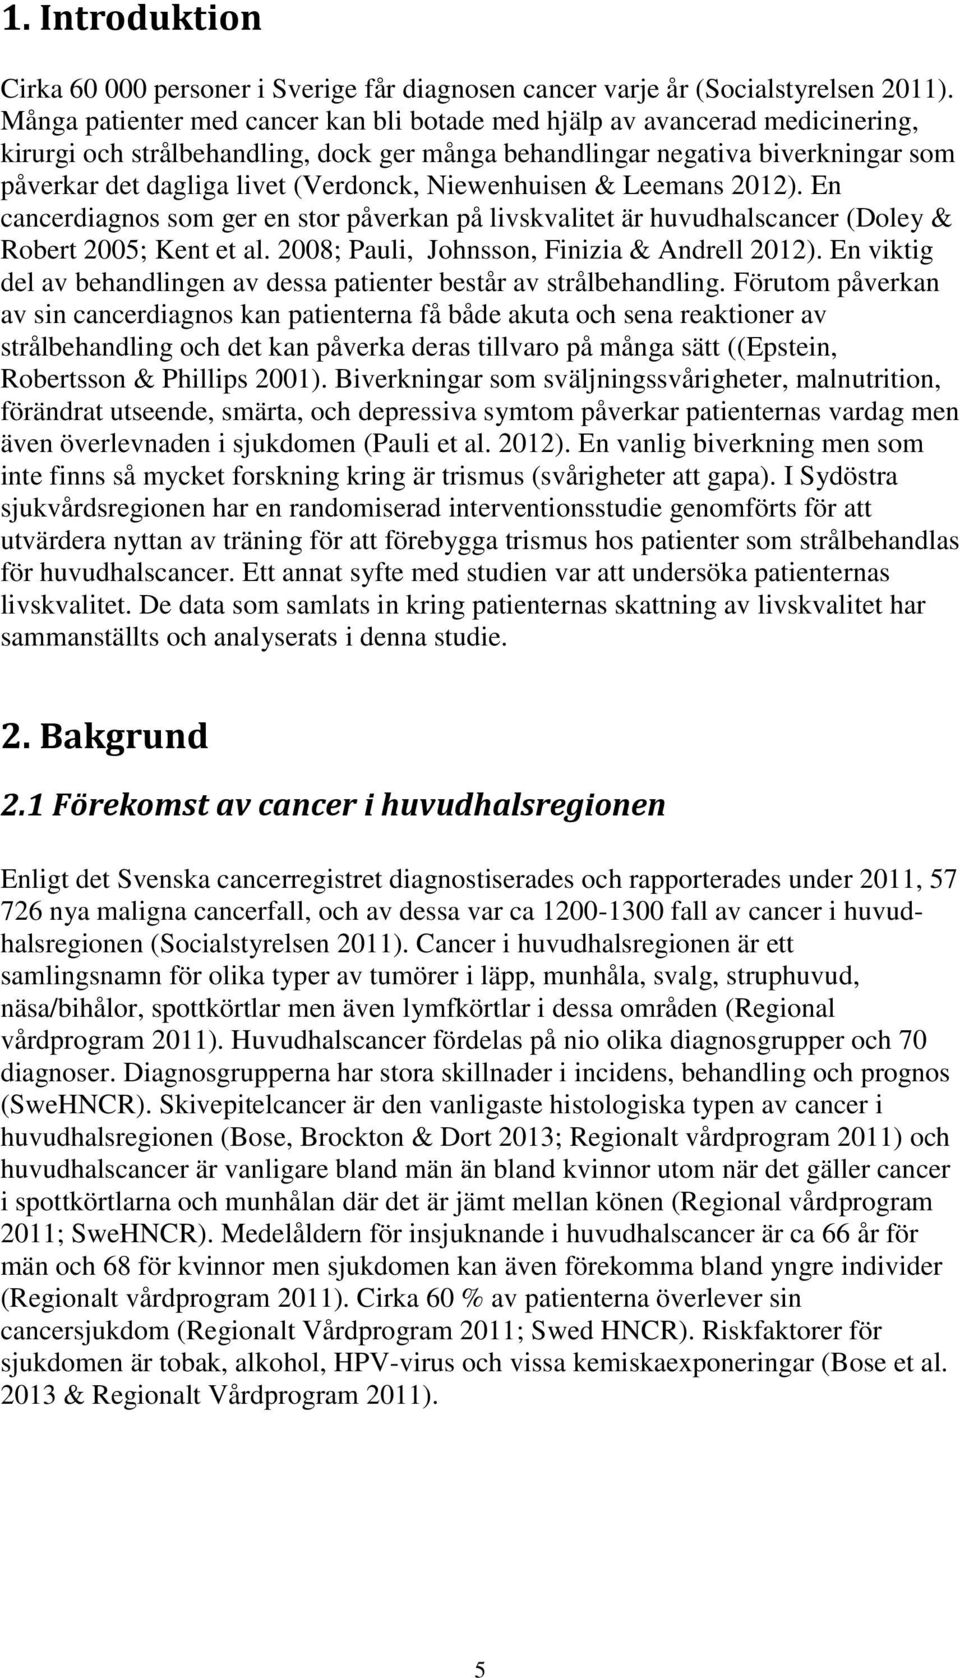 Niewenhuisen & Leemans 2012). En cancerdiagnos som ger en stor påverkan på livskvalitet är huvudhalscancer (Doley & Robert 2005; Kent et al. 2008; Pauli, Johnsson, Finizia & Andrell 2012).